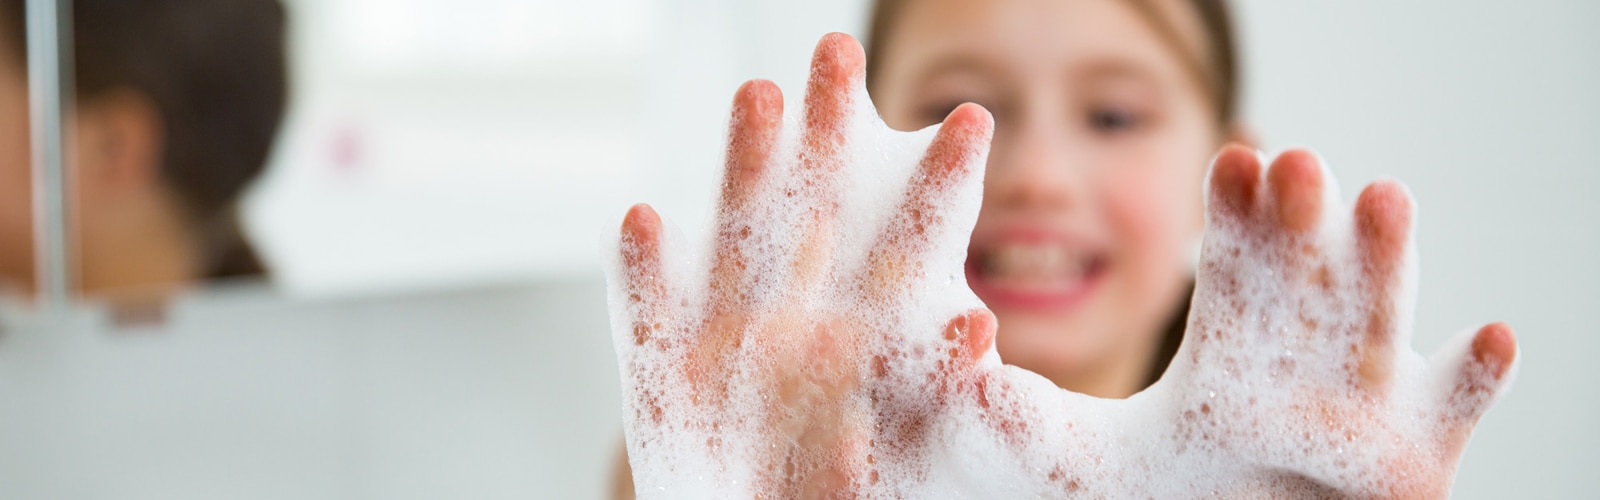 Ένα κορίτσι με τα χέρια της γεμάτα με σαπούνι σε αφρό